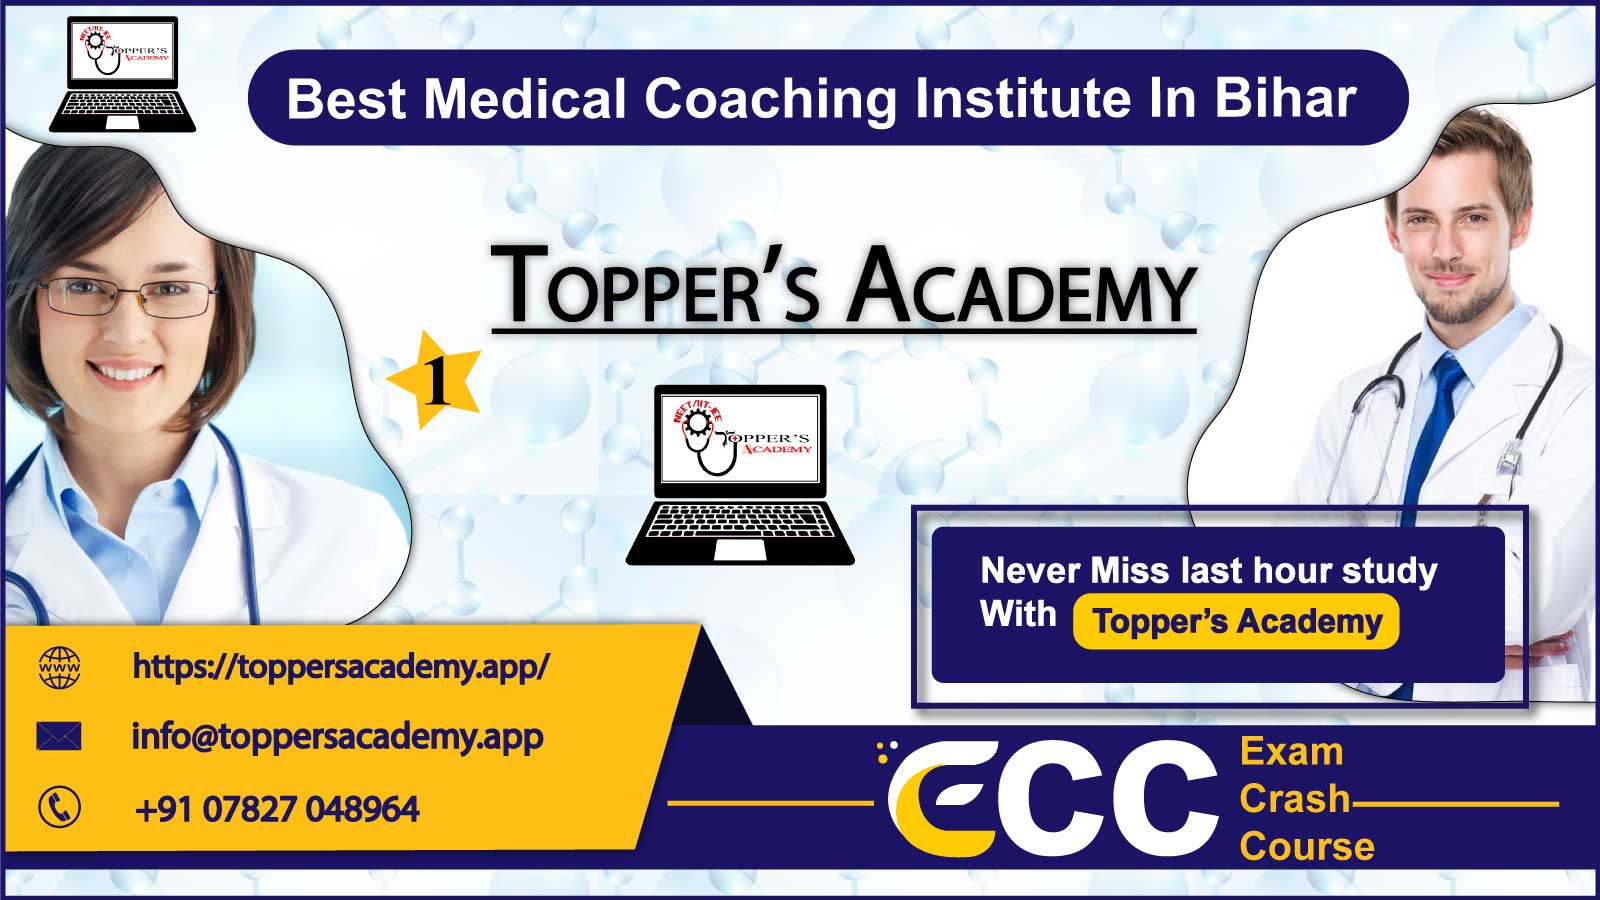 Toppers Academy NEET Coaching in Bihar